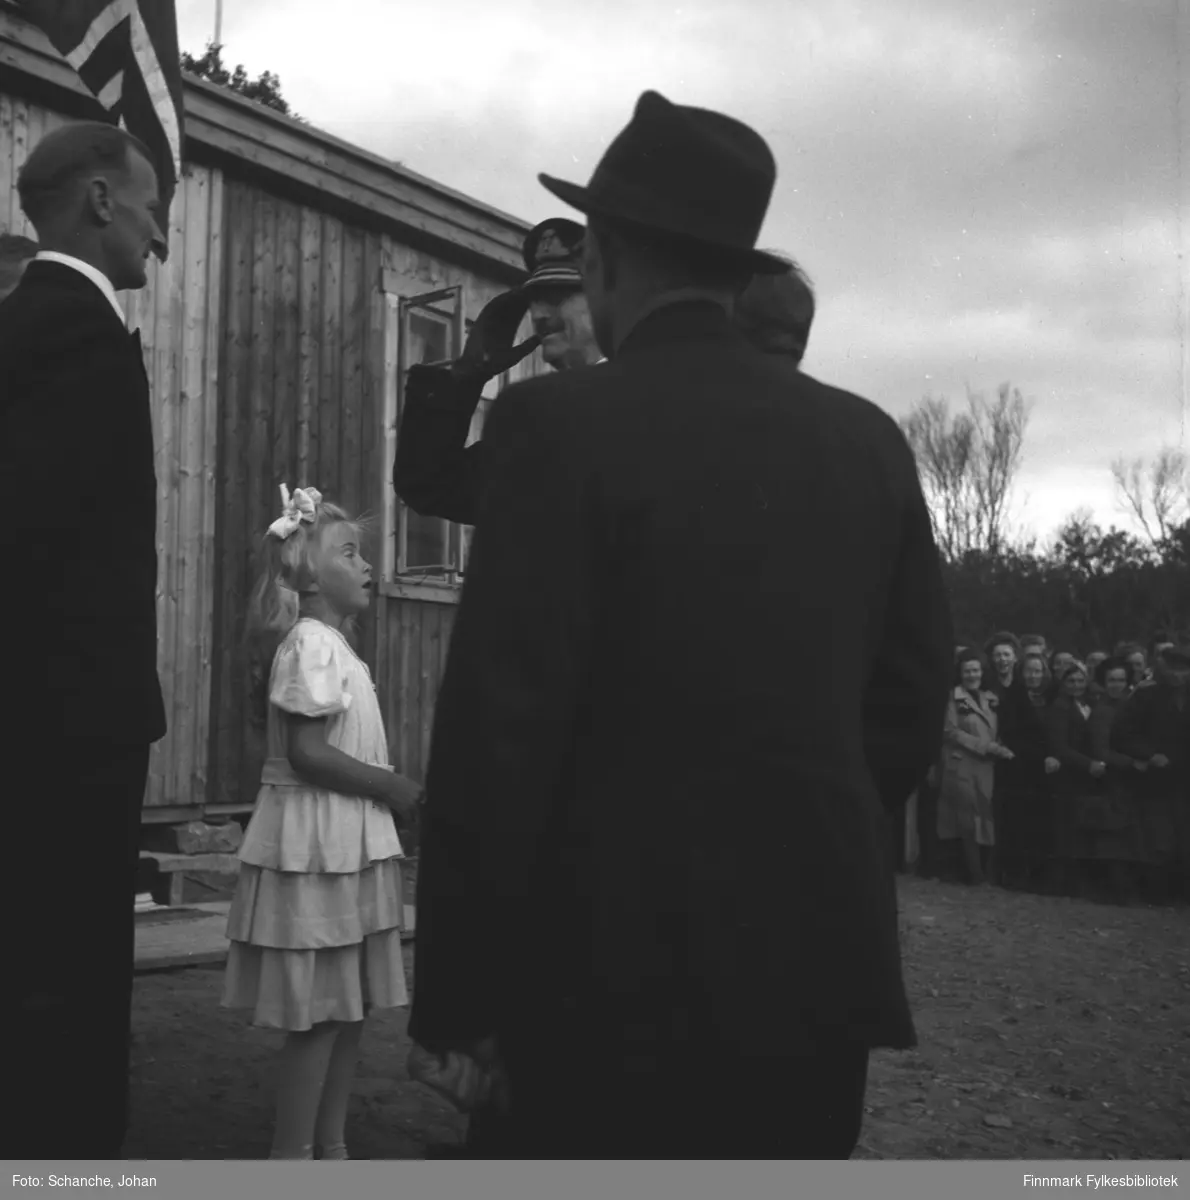 Kongebesøk i 1946:  Kong Haakon VII besøker Tana. Kongen hilser en mann som står halveis med ryggen mot kamera. Foran Kongen står en annen mann slik att vi ser bare ansiktet og hander til Kongen på bildet.  Mellom mennene står en liten jente på hvit kjole, hun har antagelig gitt blomsterbuketten til Kongen.